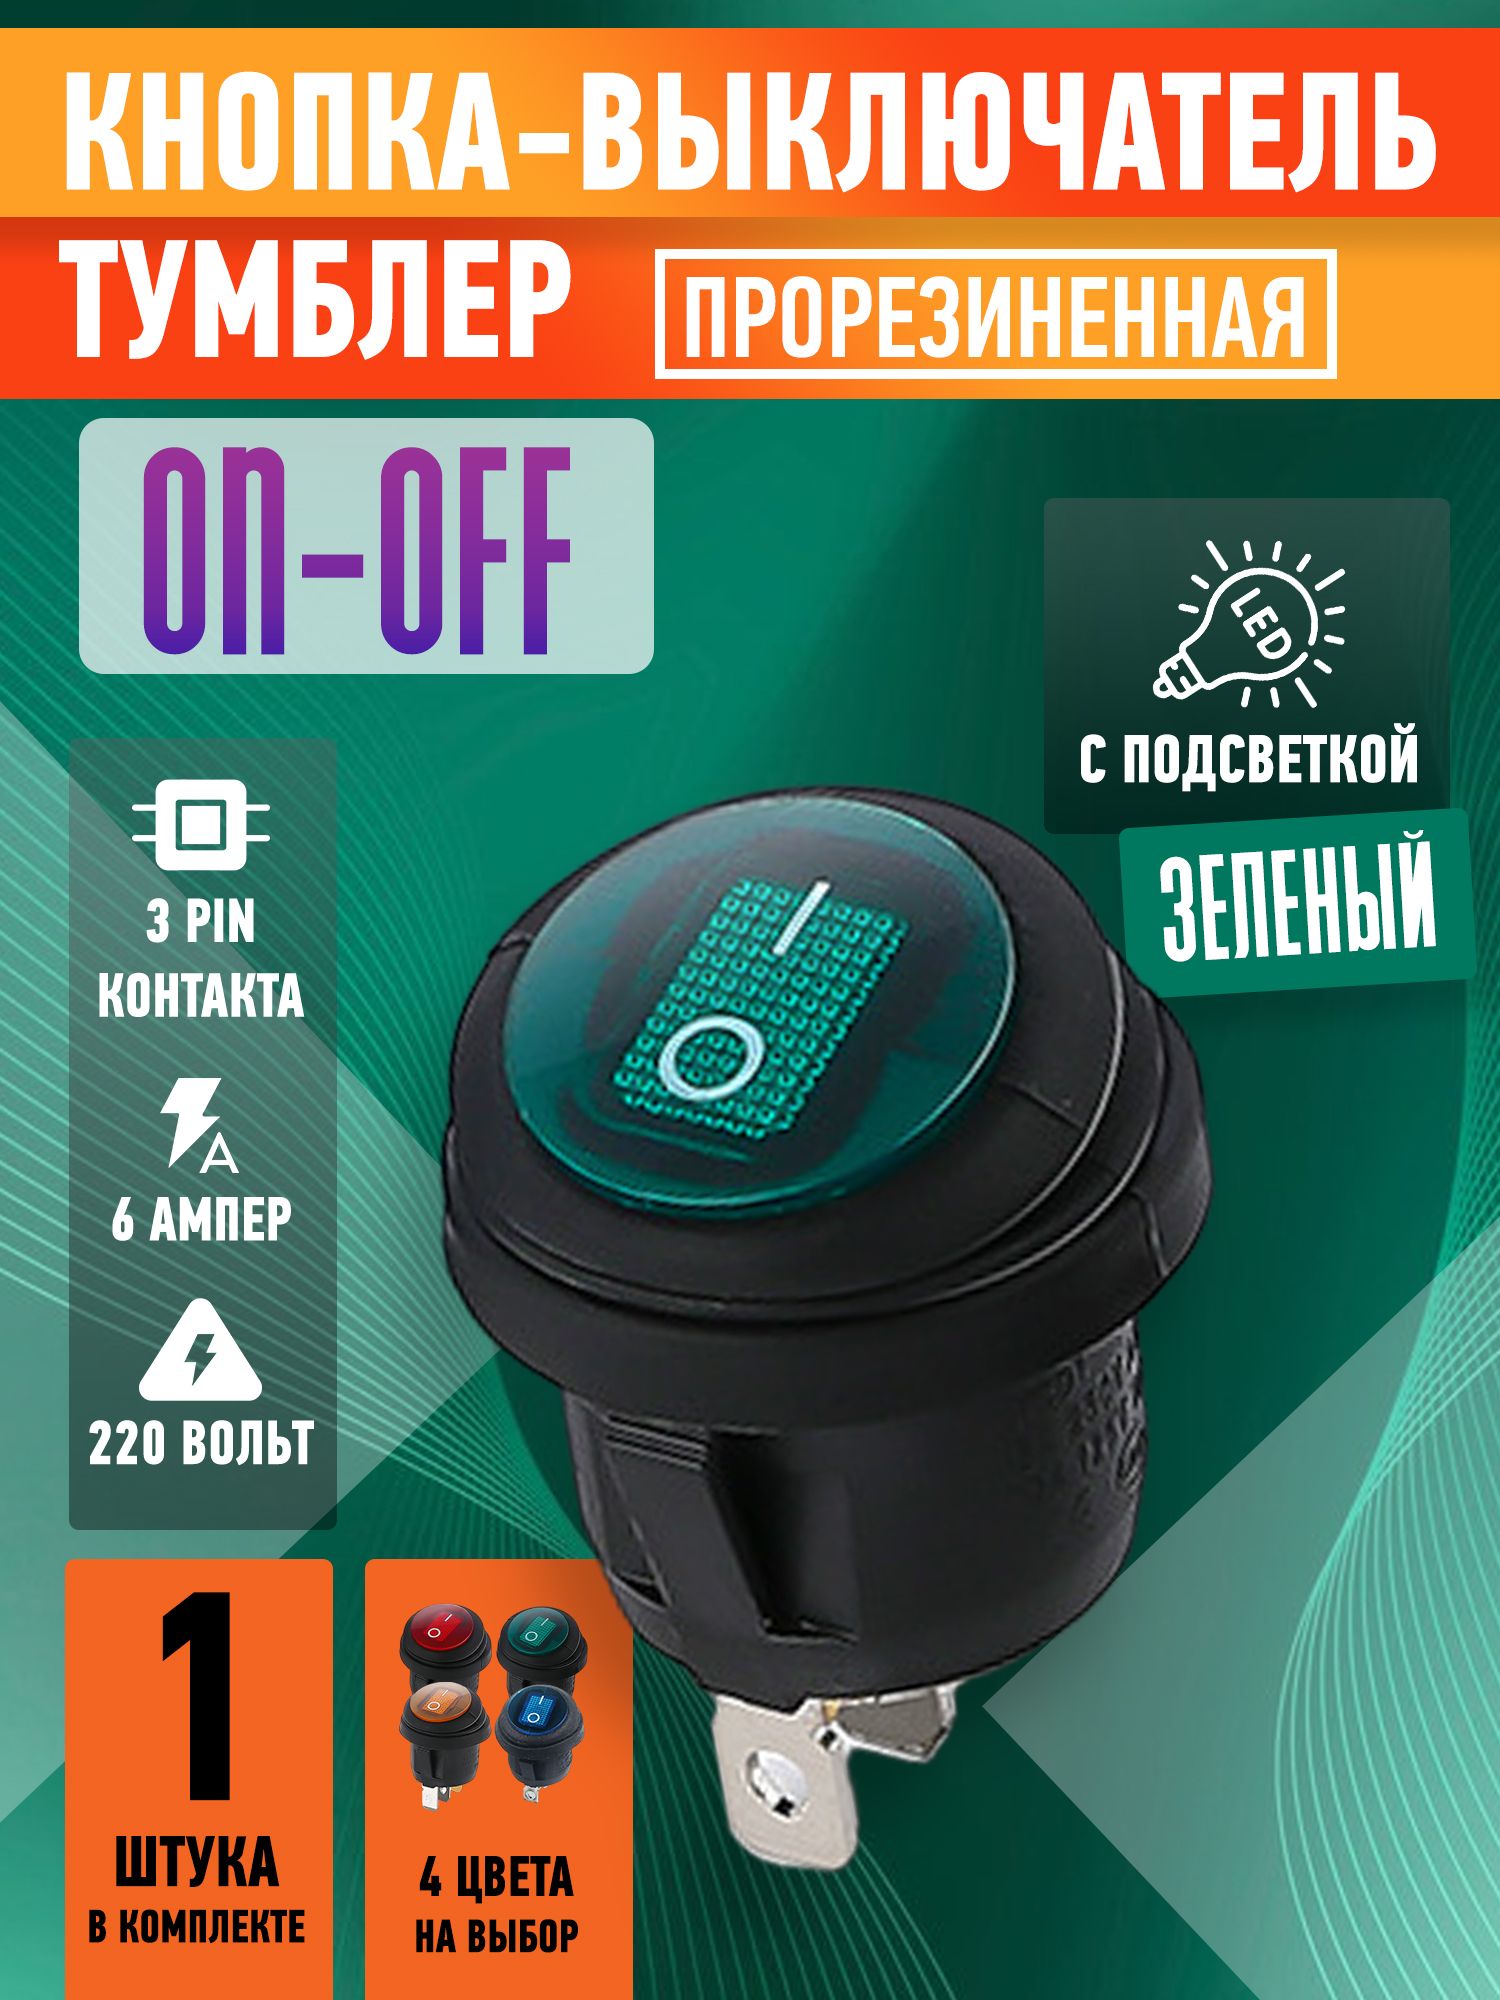 Кнопка-выключательКРУГЛАЯзелёнаяпрорезиненнаясзащитойотвлагиON-OFF,3контакта,6А,230В